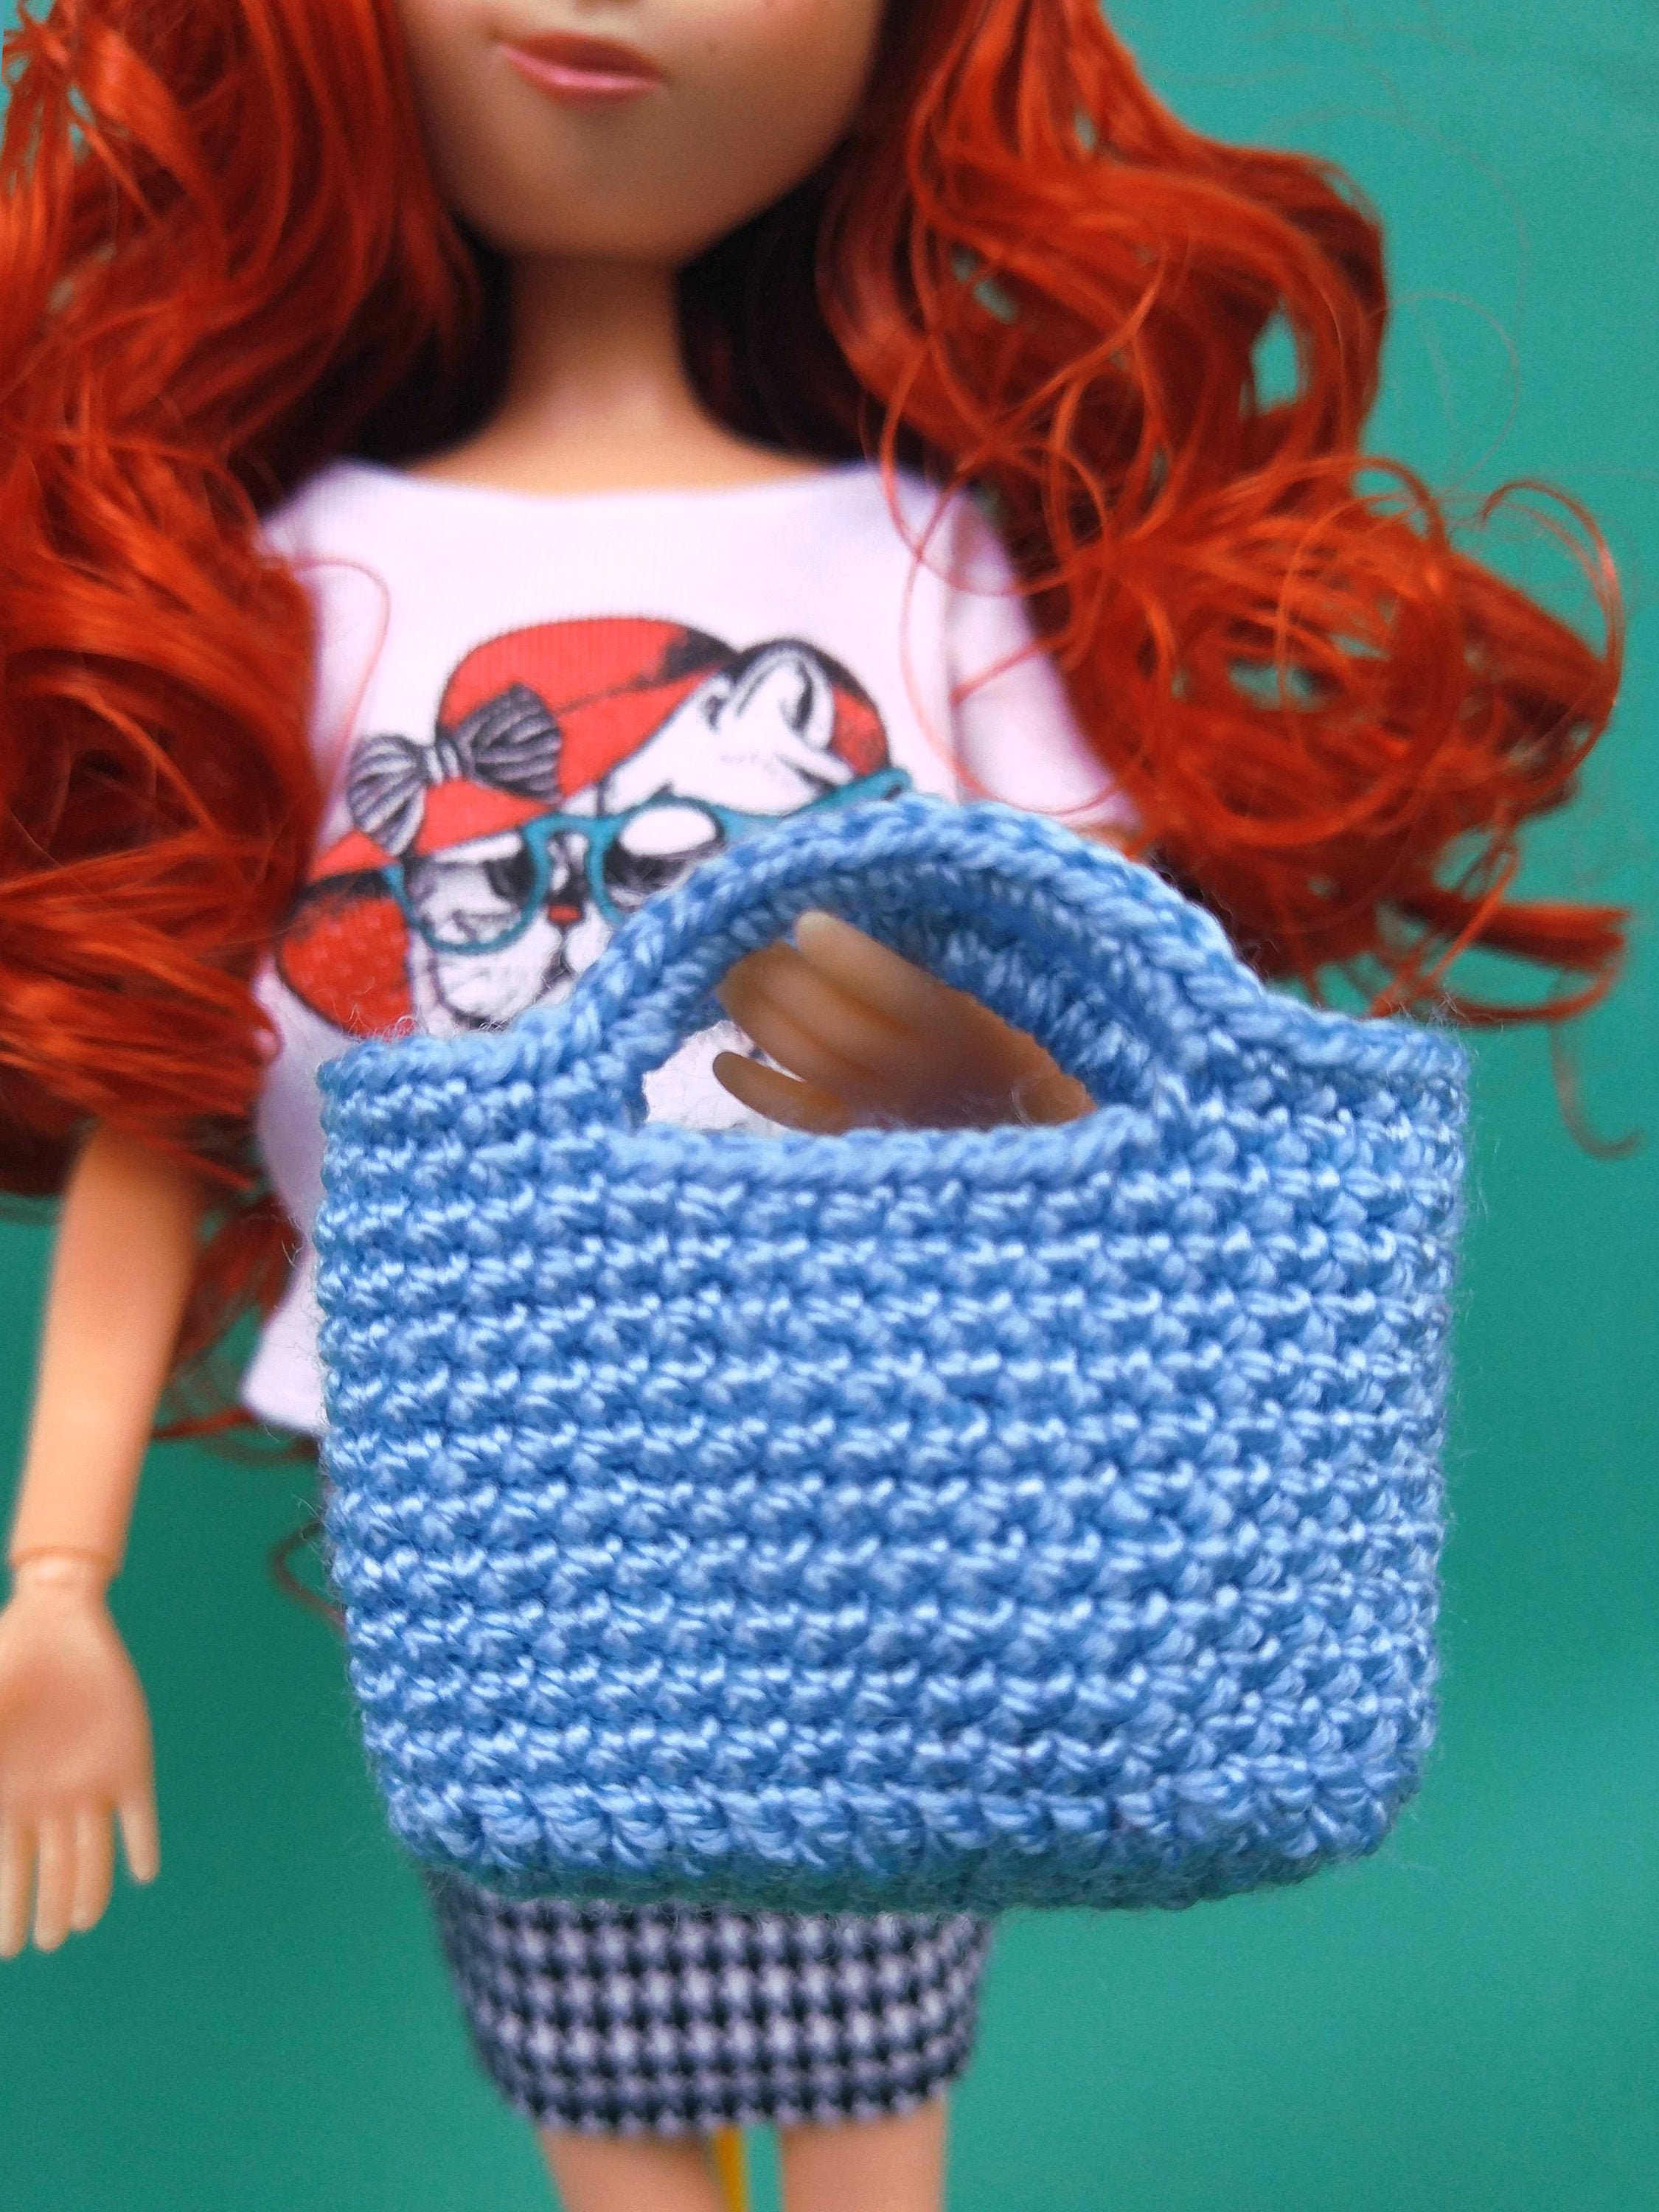 Doll Clothing Bag Accessories Crochet Summer Handbag Curvy | Etsy Ireland